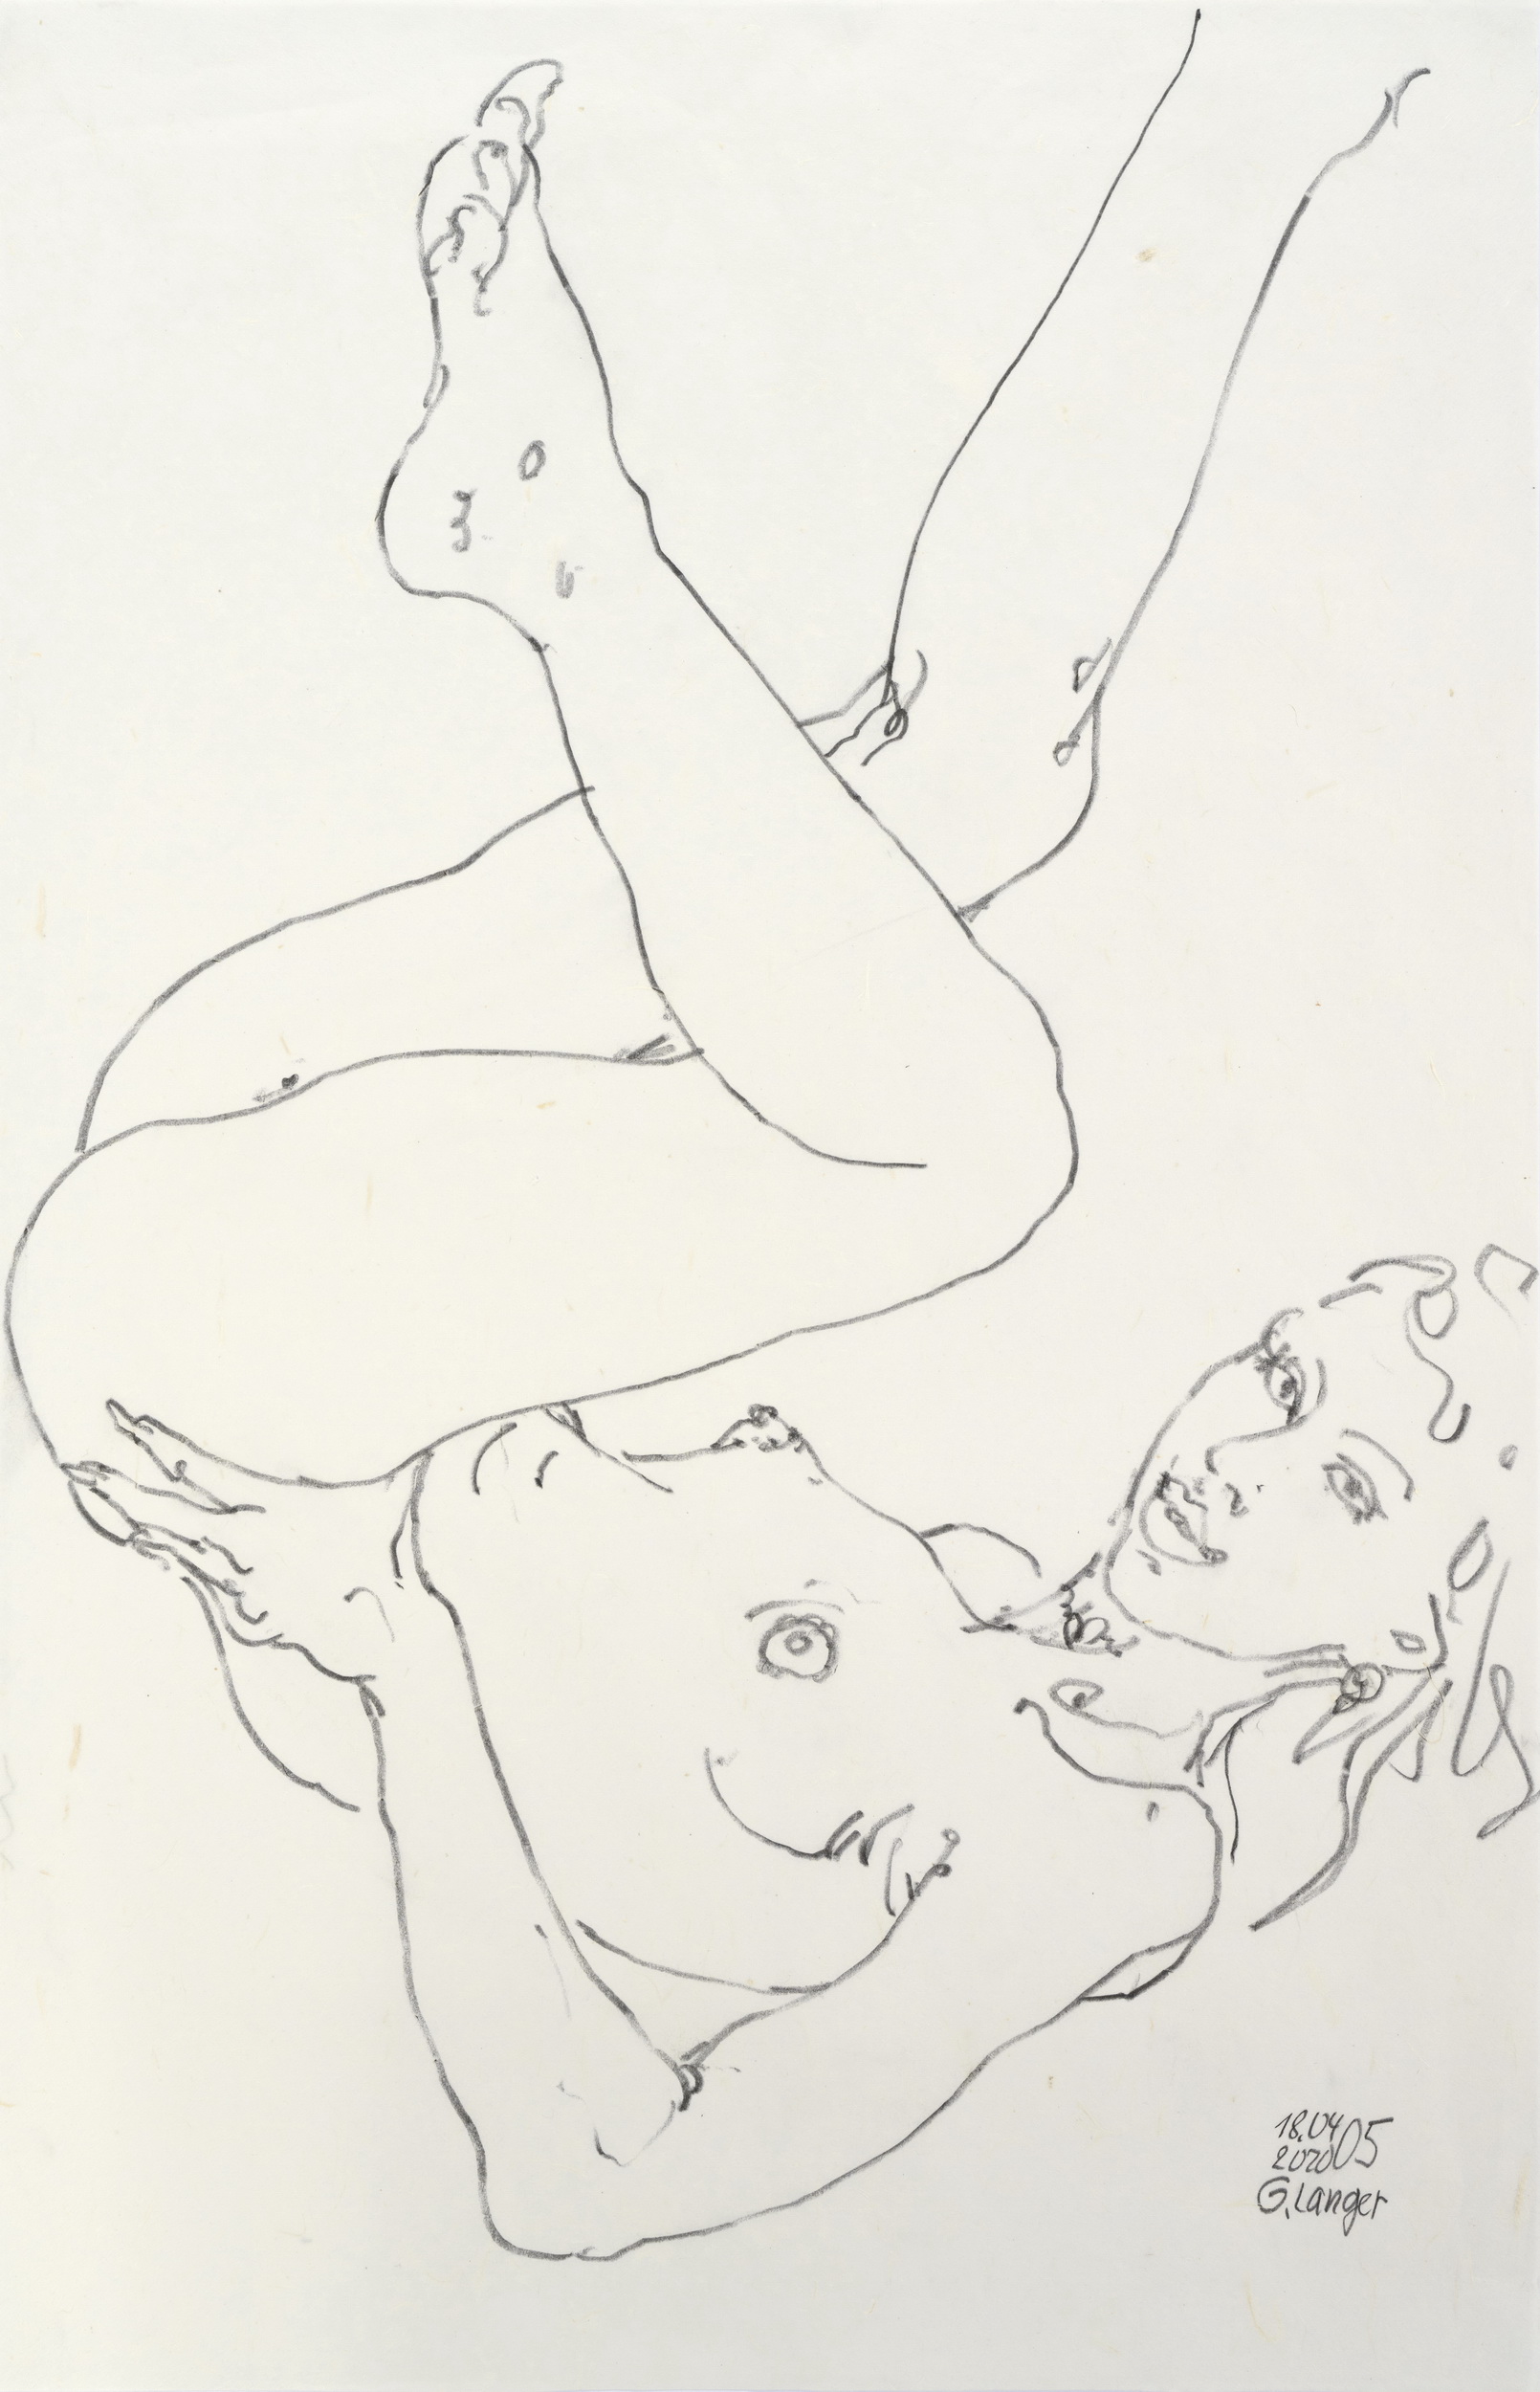 Gunter Langer, Liegender Mädchenakt mit hochgestreckten Beinen, 2020, Zeichnung, Chinapapier, 70 x 46 cm